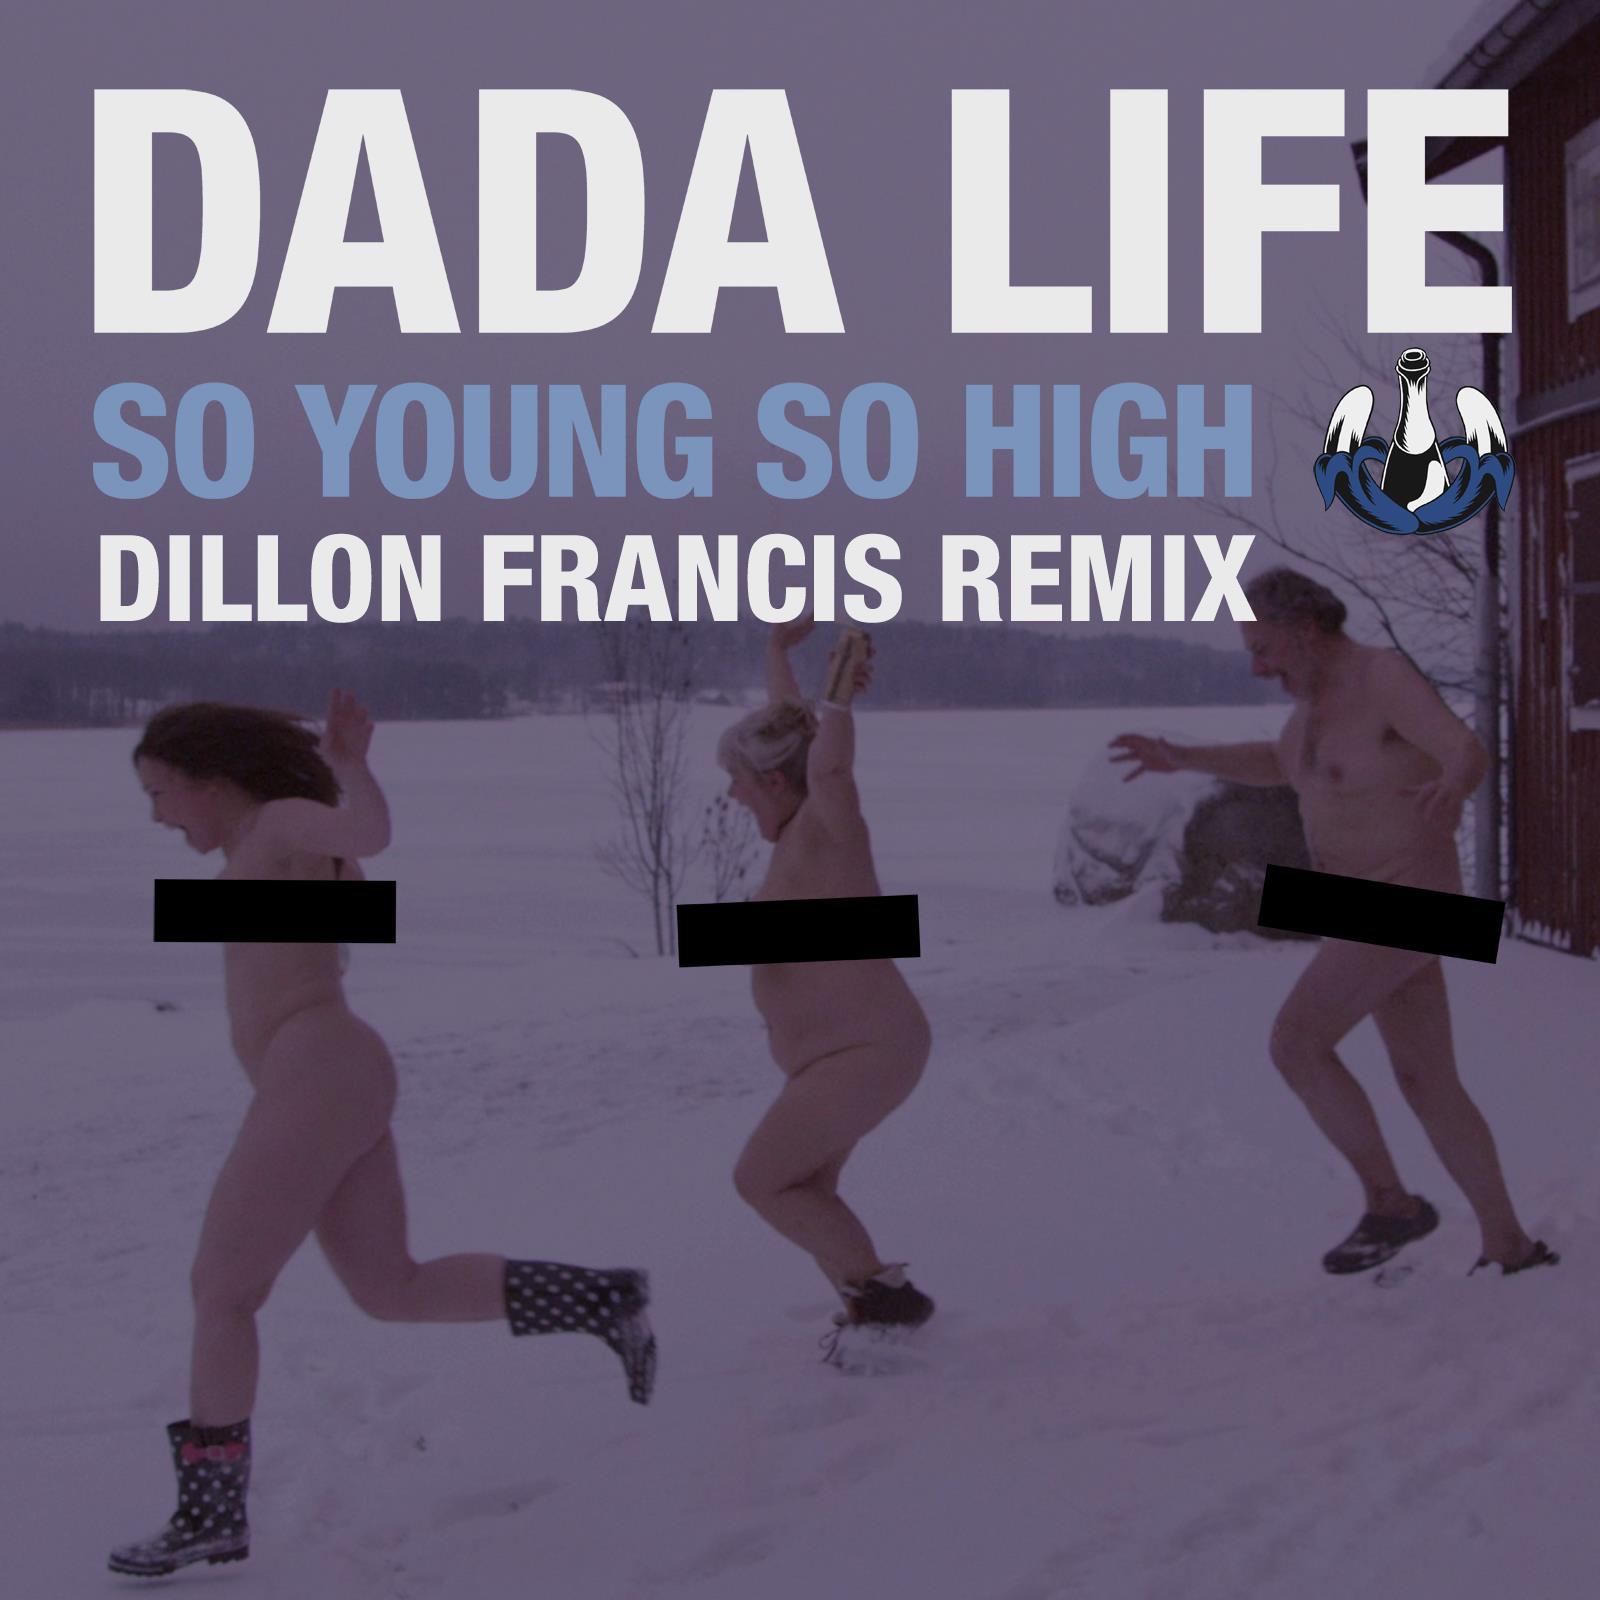 Dada Life – So Young So High (Dillon Francis Remix) (Preview) [Electro Trap]